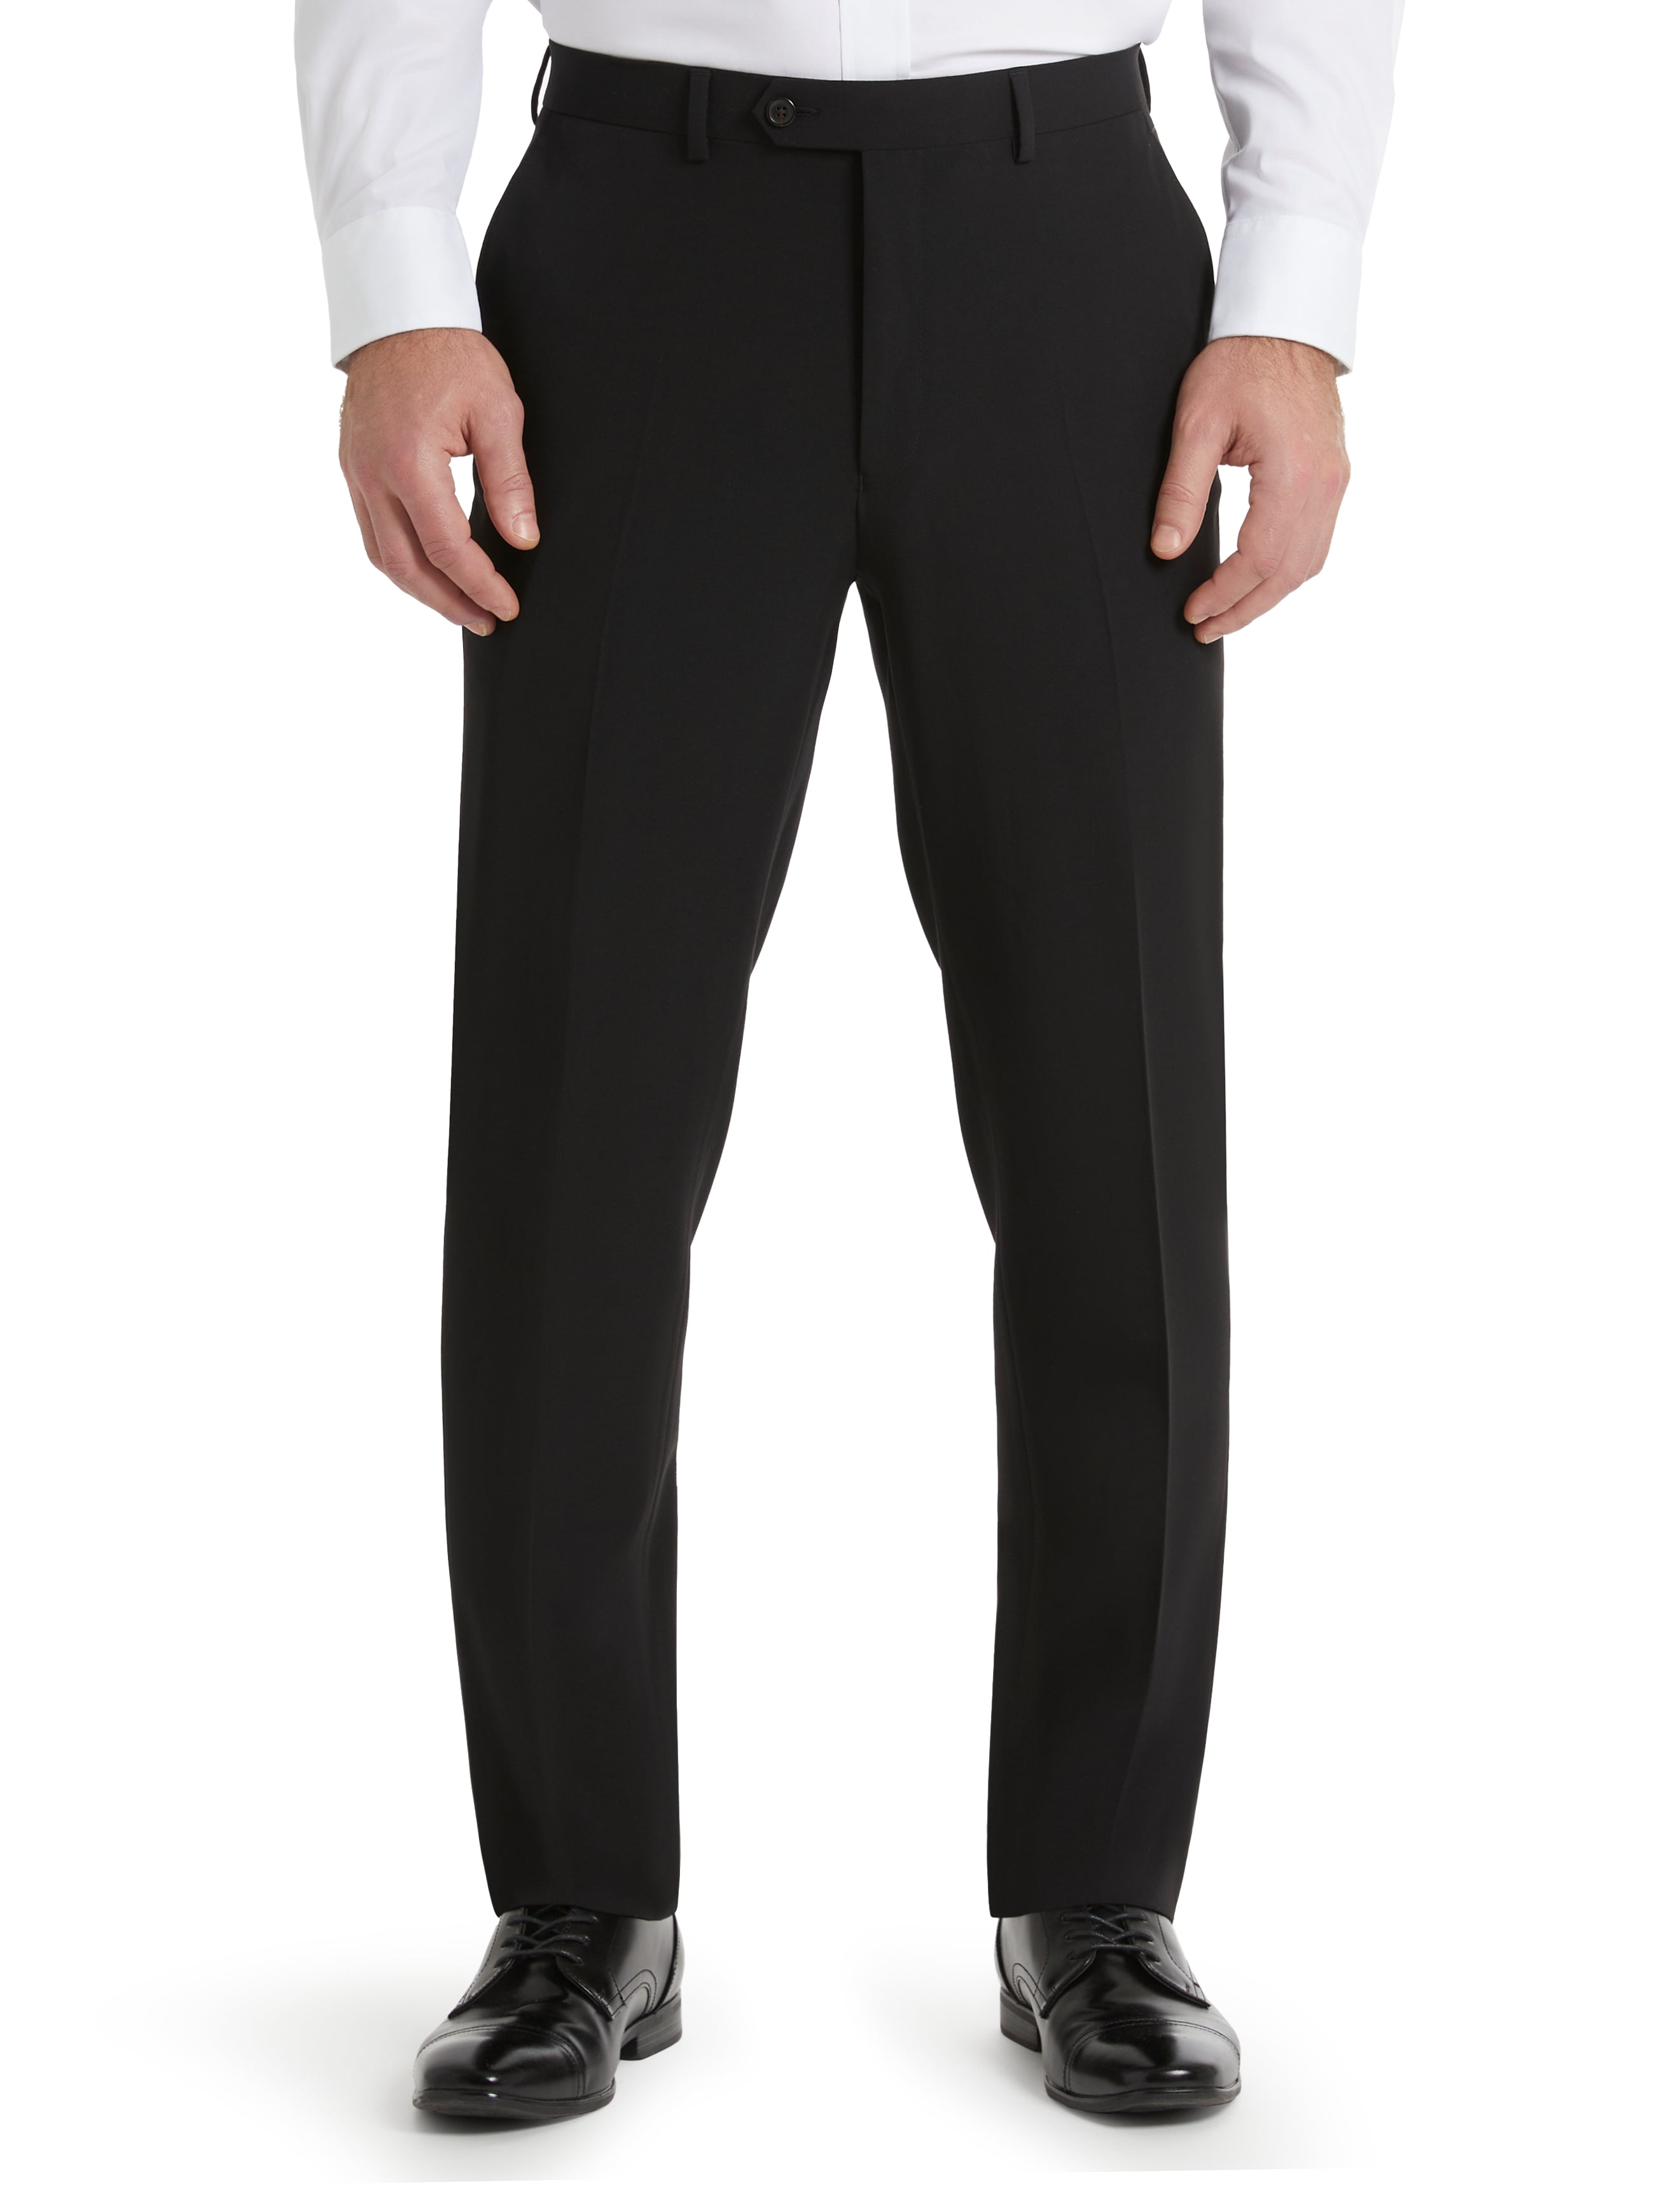 Chaps | Suits & Blazers | Chaps Black 3 Button Pinstripe Suit Blazer And Pants  Suit Jacket Pants 4s | Poshmark